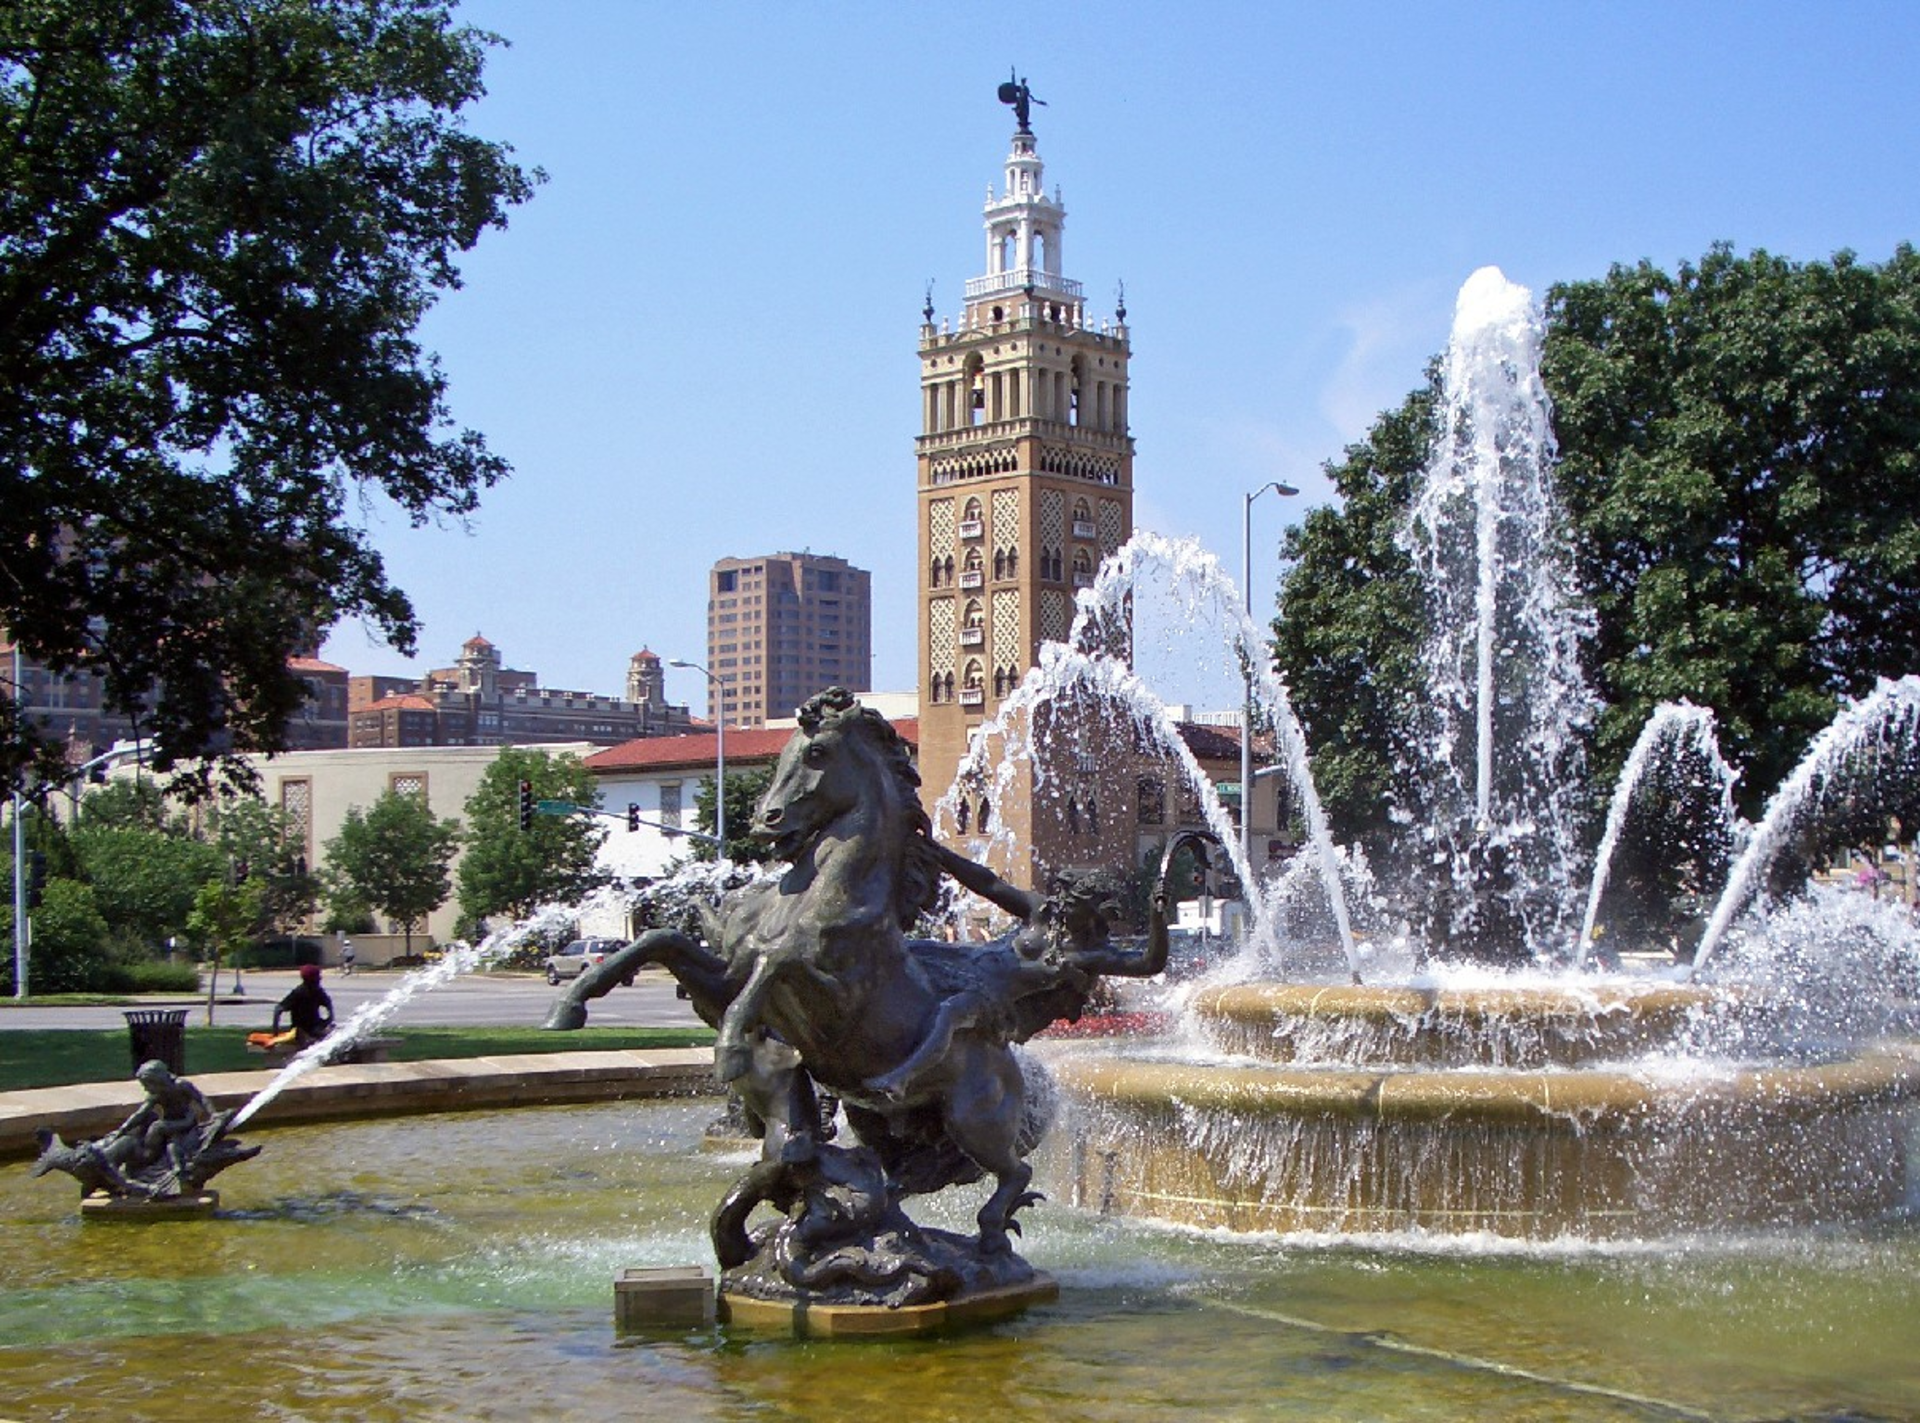 Kết quả hình ảnh cho kansas city plaza fountain